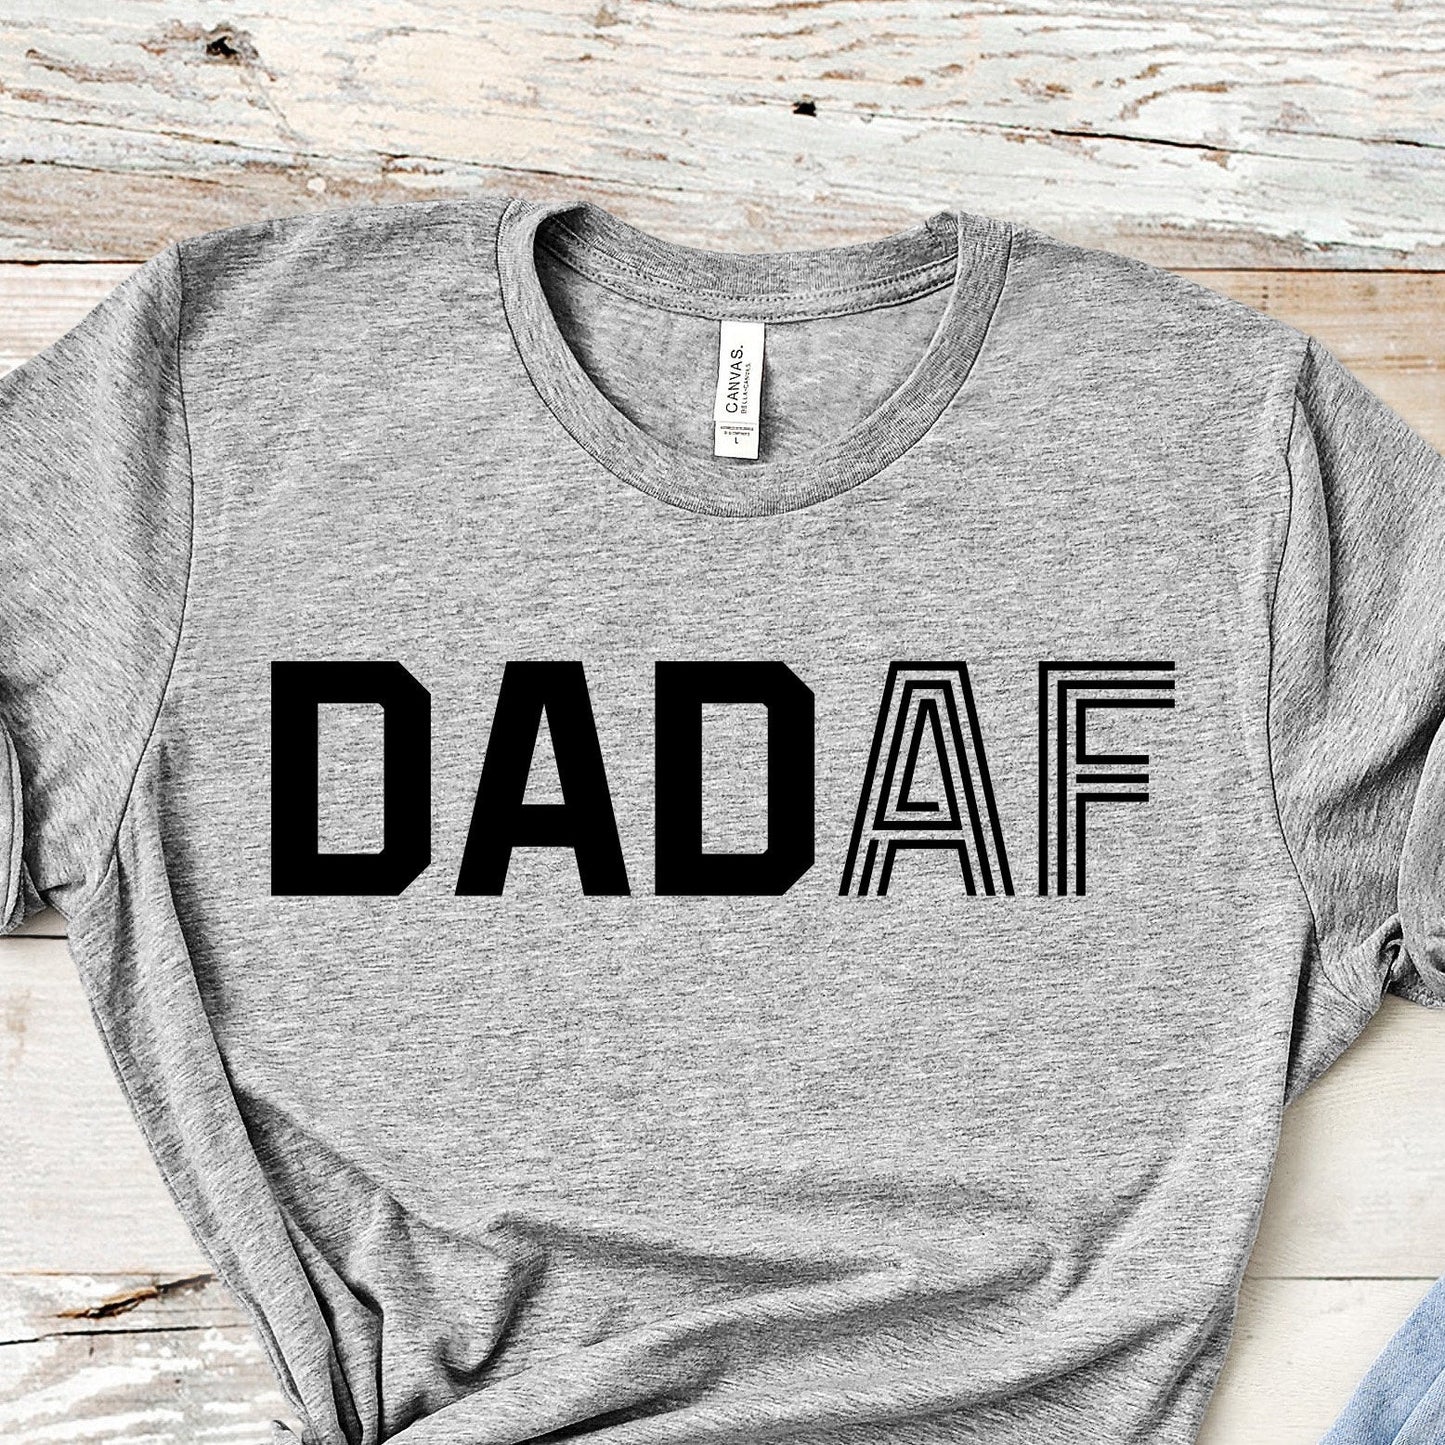 Dad AF | Basic Bros Tee